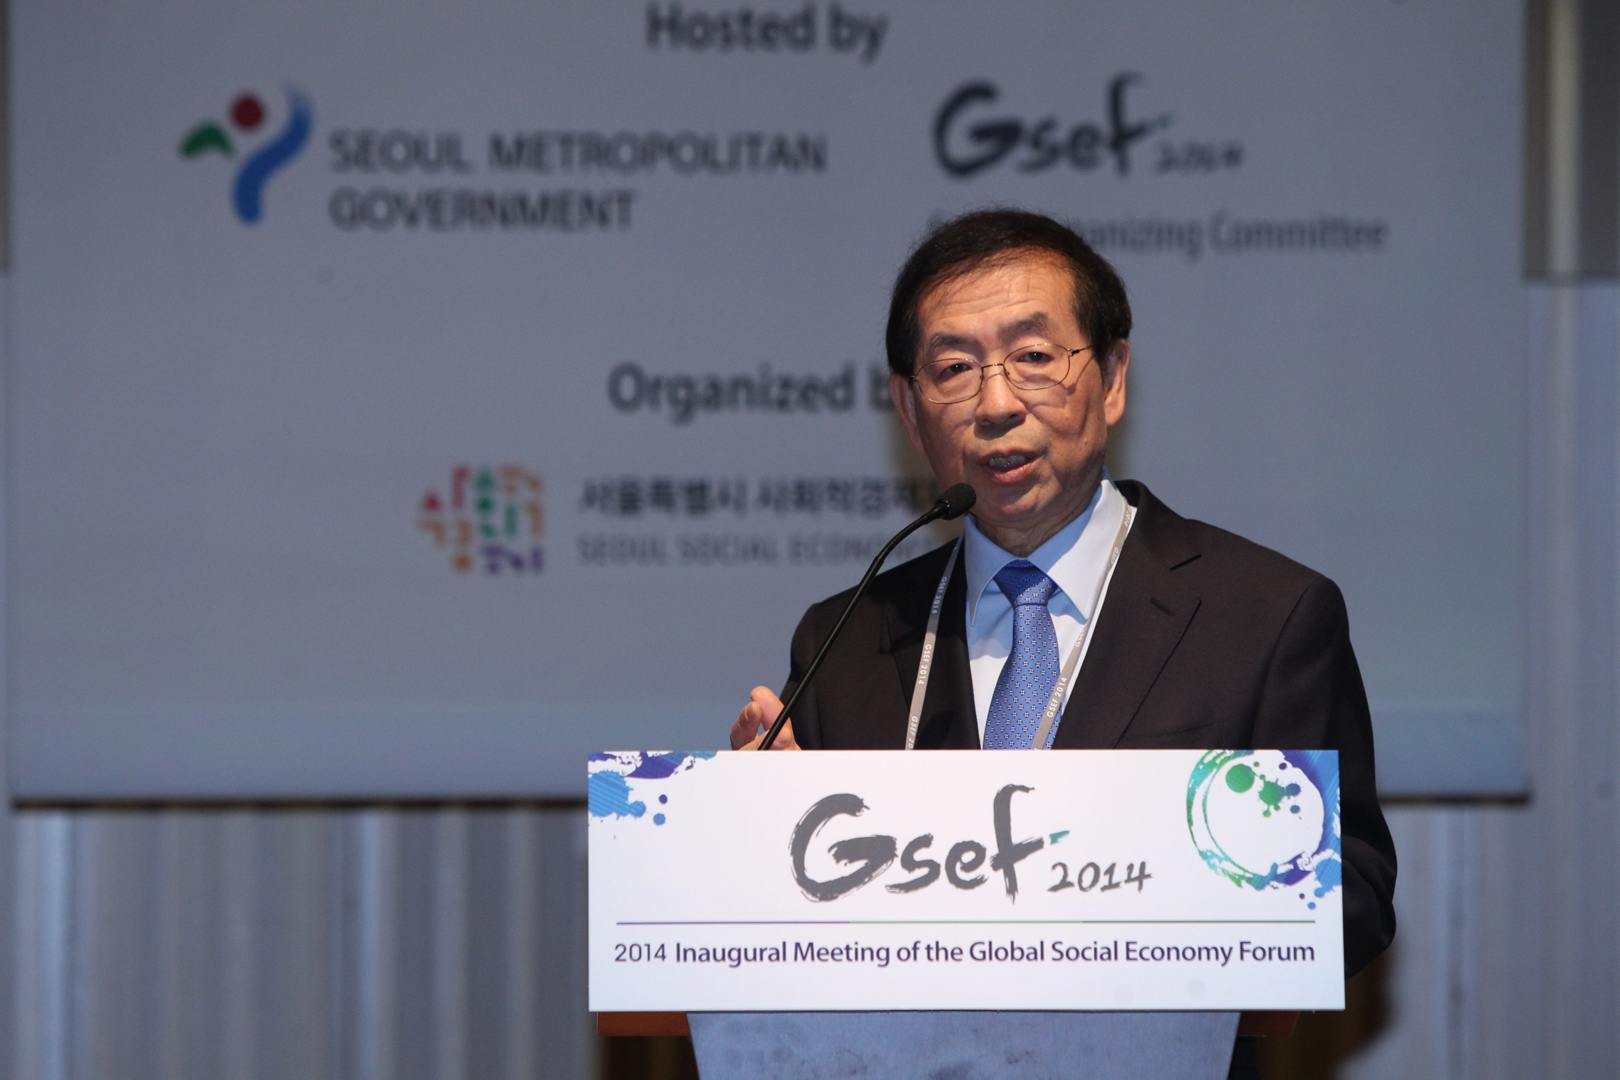 Le maire de Séoul, Park Won-soon, initiateur de l’Association GSEF.